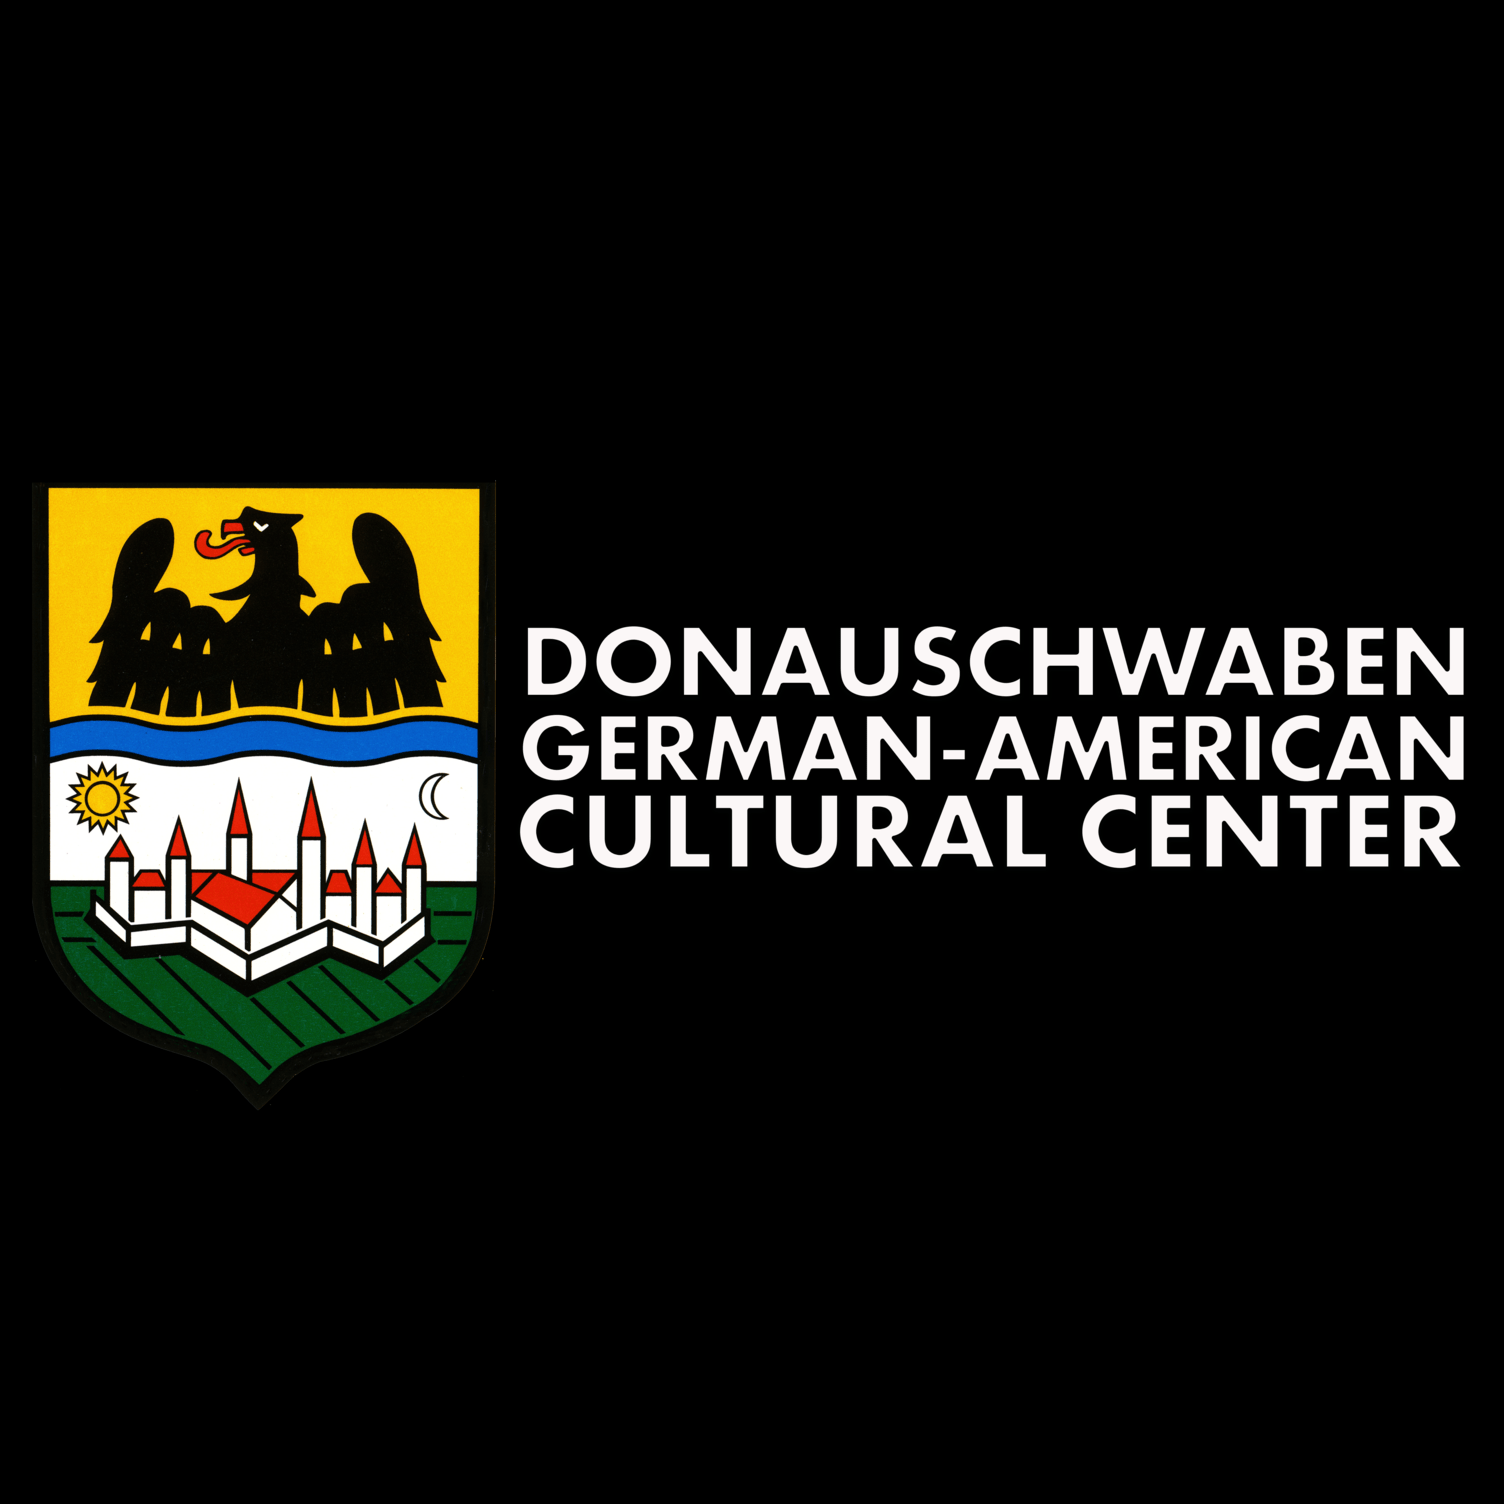 German Speaking Organization in USA - Donauschwaben German-American Cultural Center